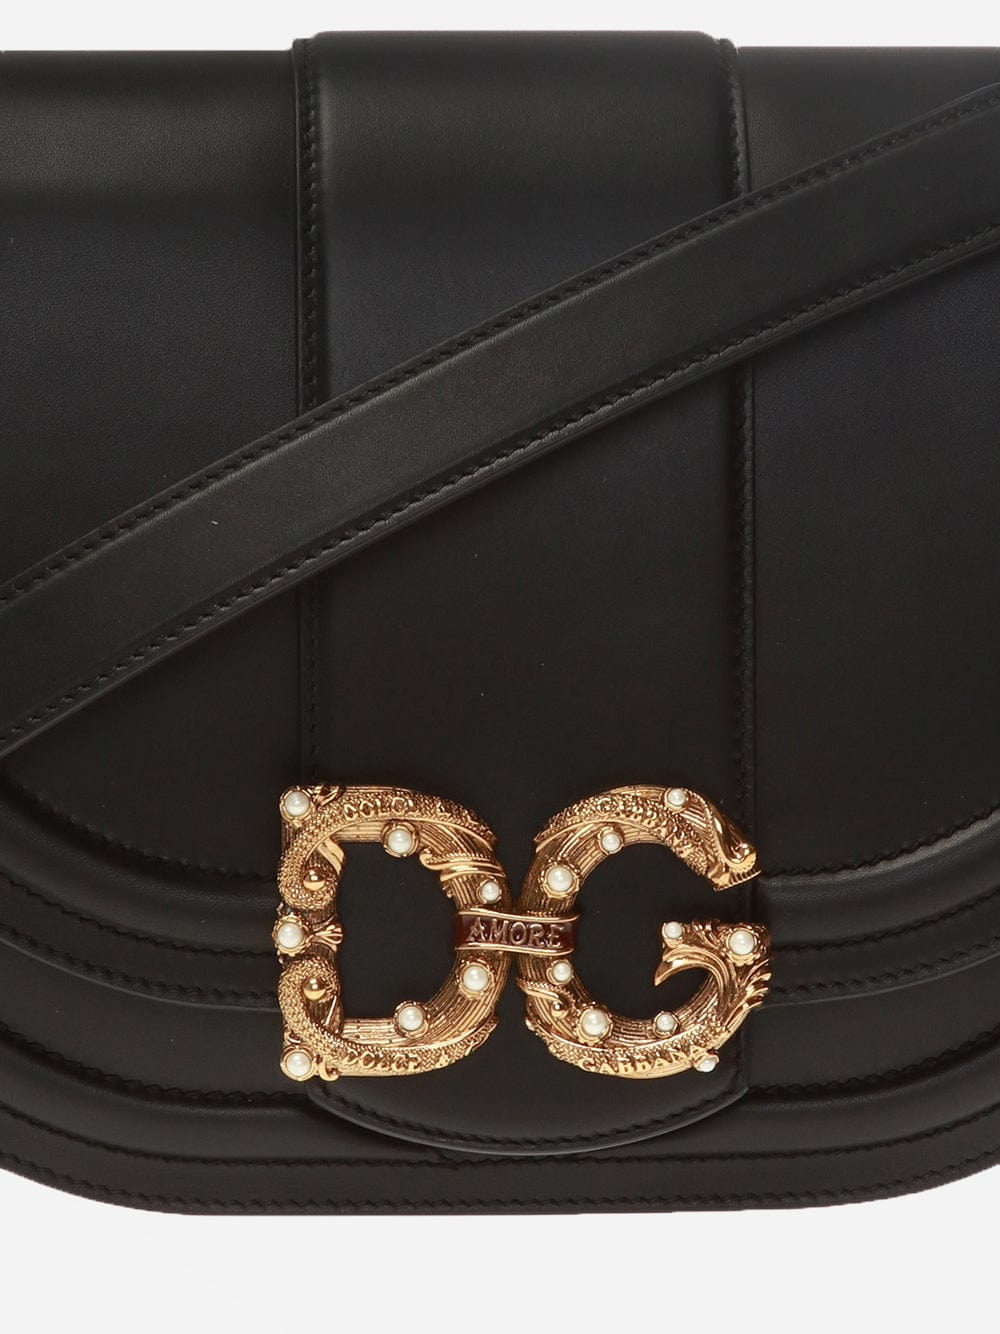 Dolce & Gabbana DG Amore Medium Shoulder Bag